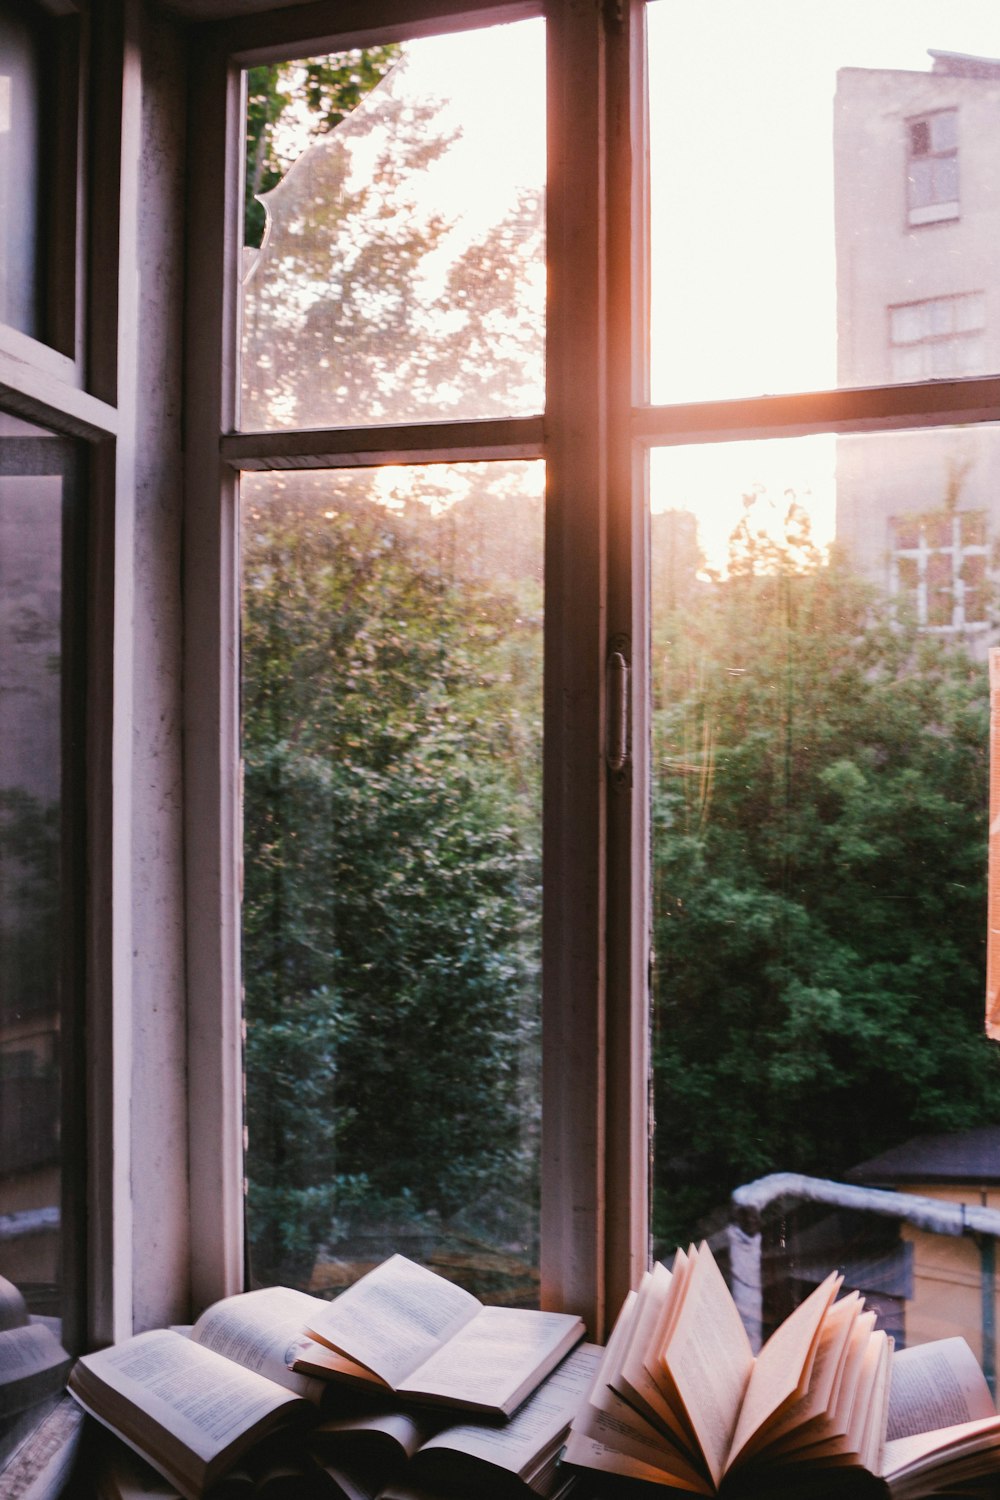 livros ao lado da janela durante o pôr do sol